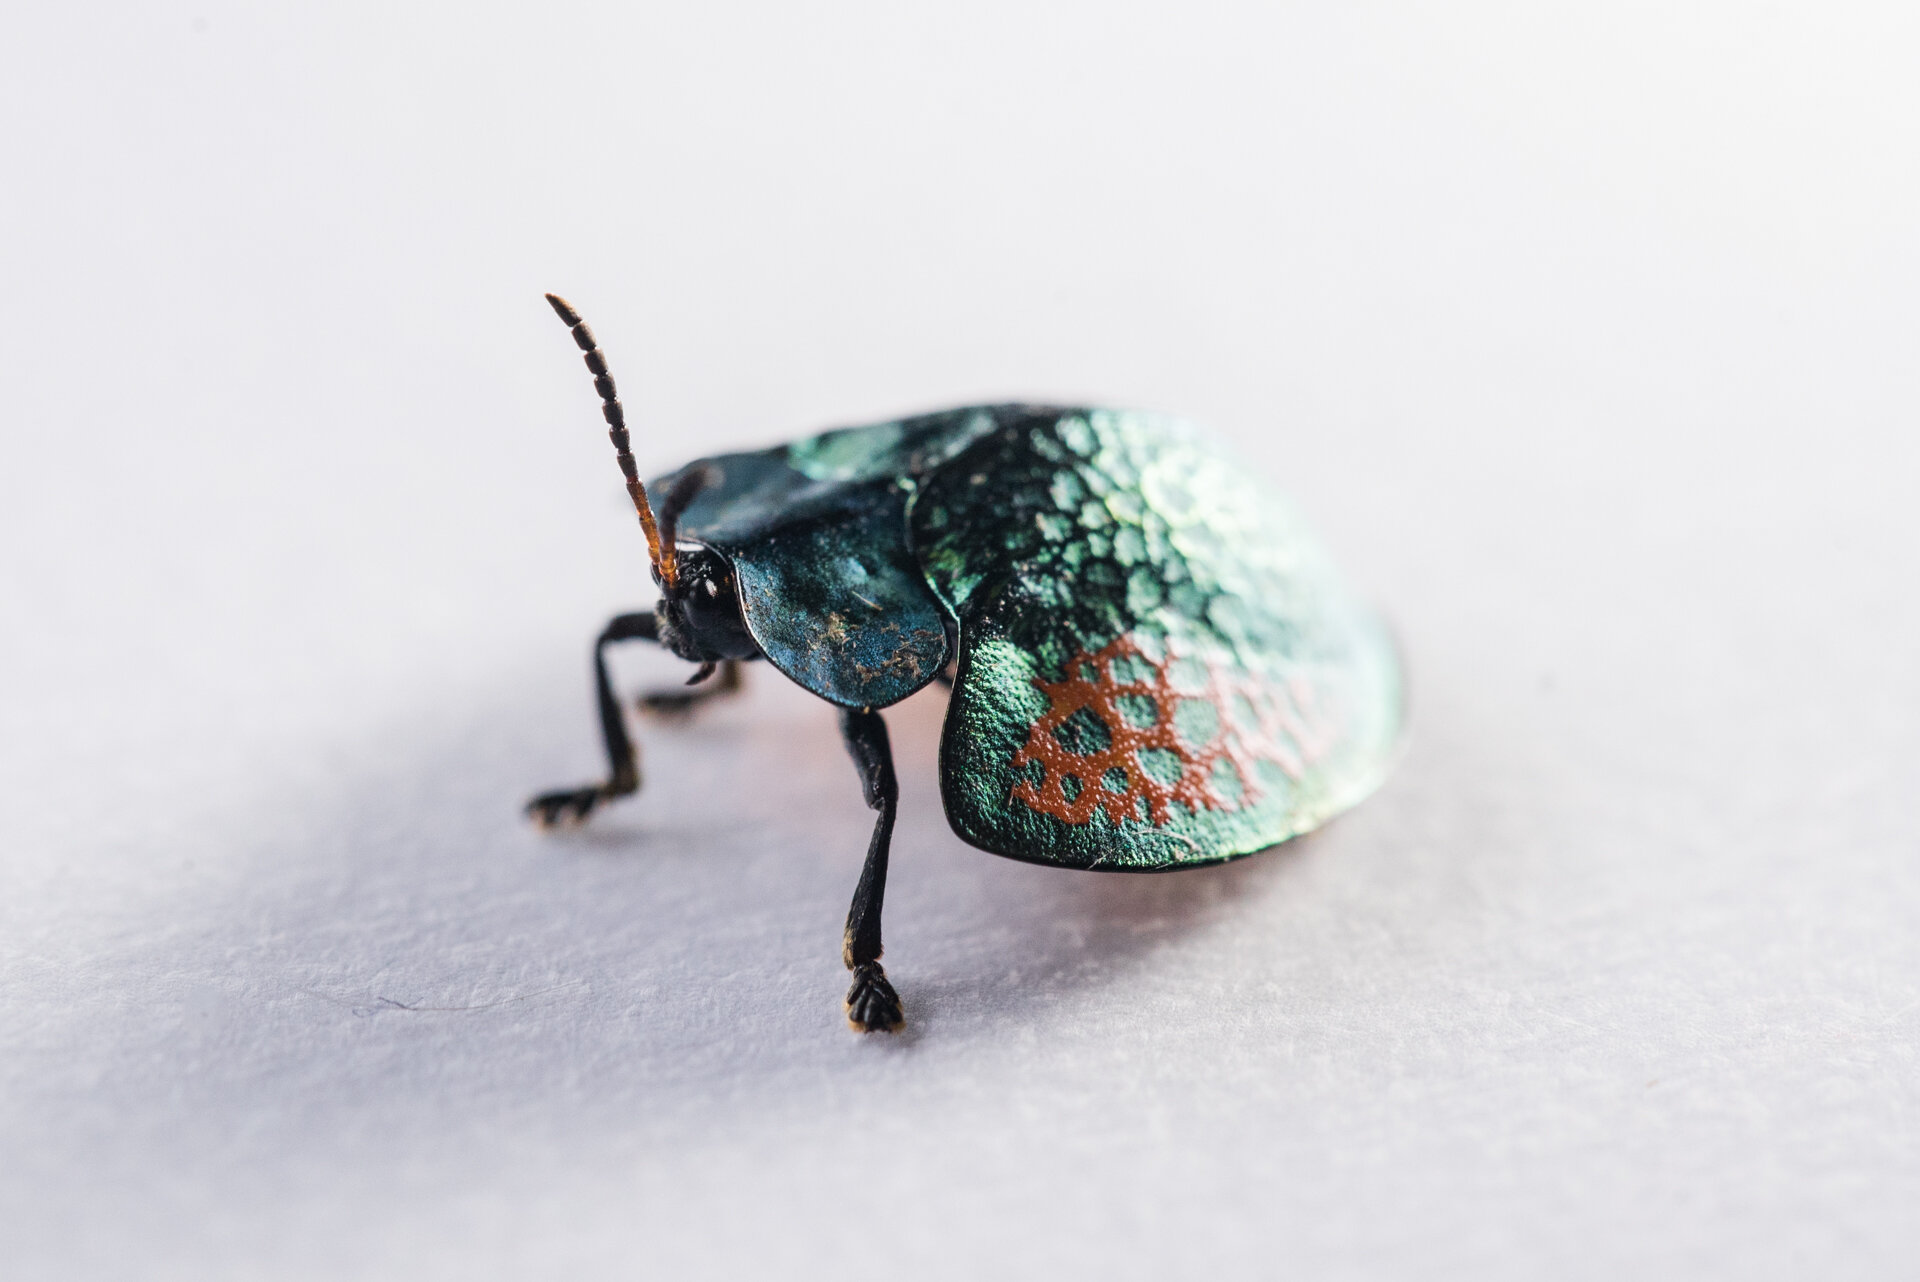 turtle-beetle-Jone-Troconis (1 of 1).jpg